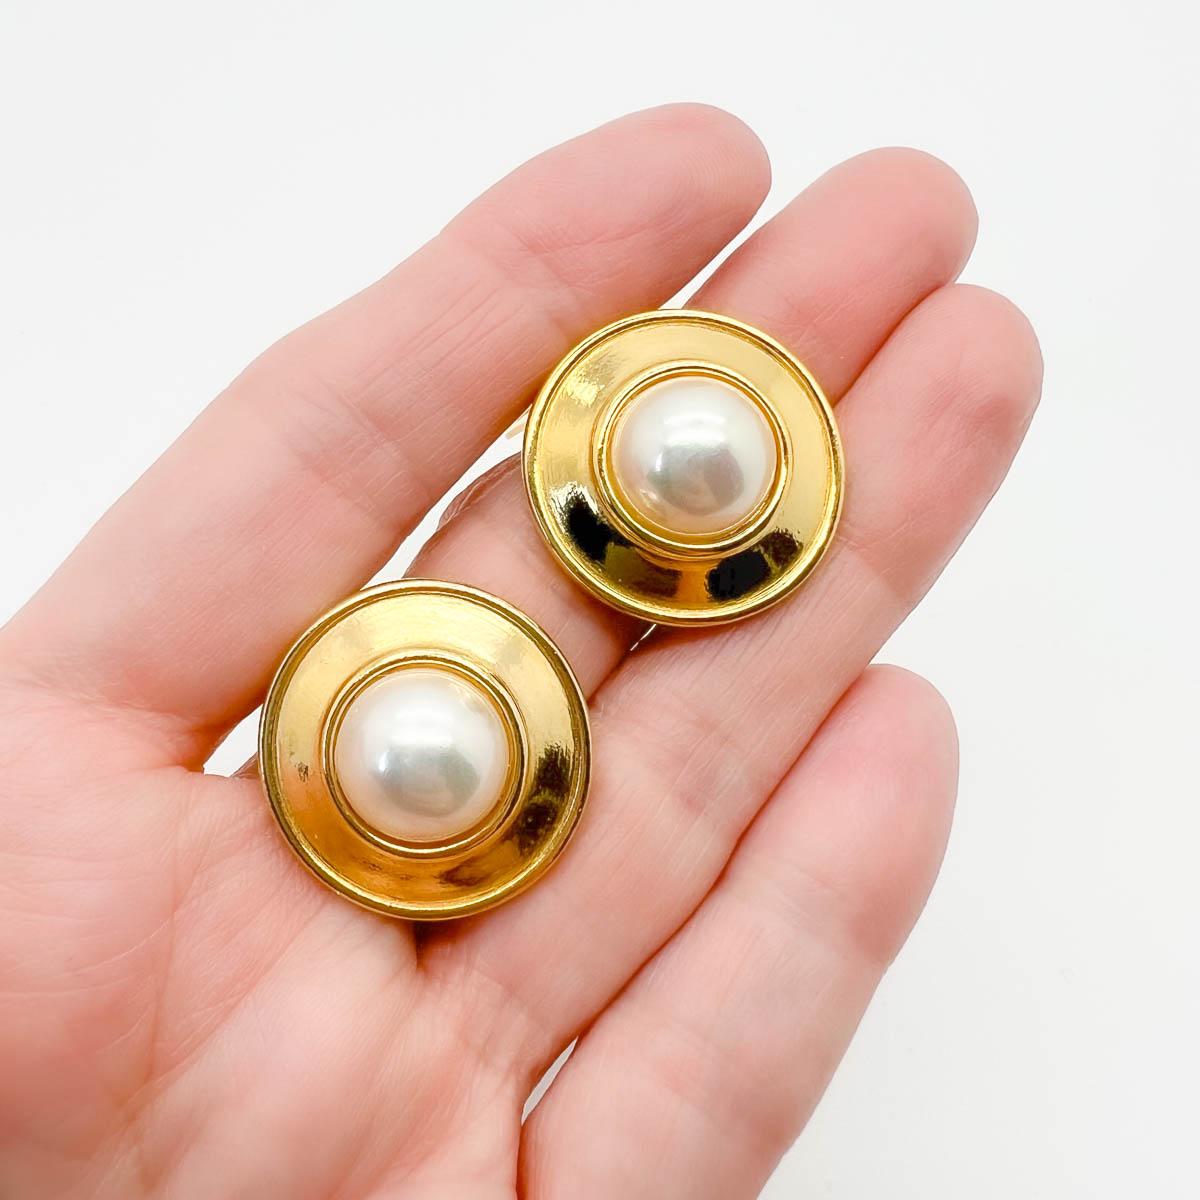 pearl earrings target